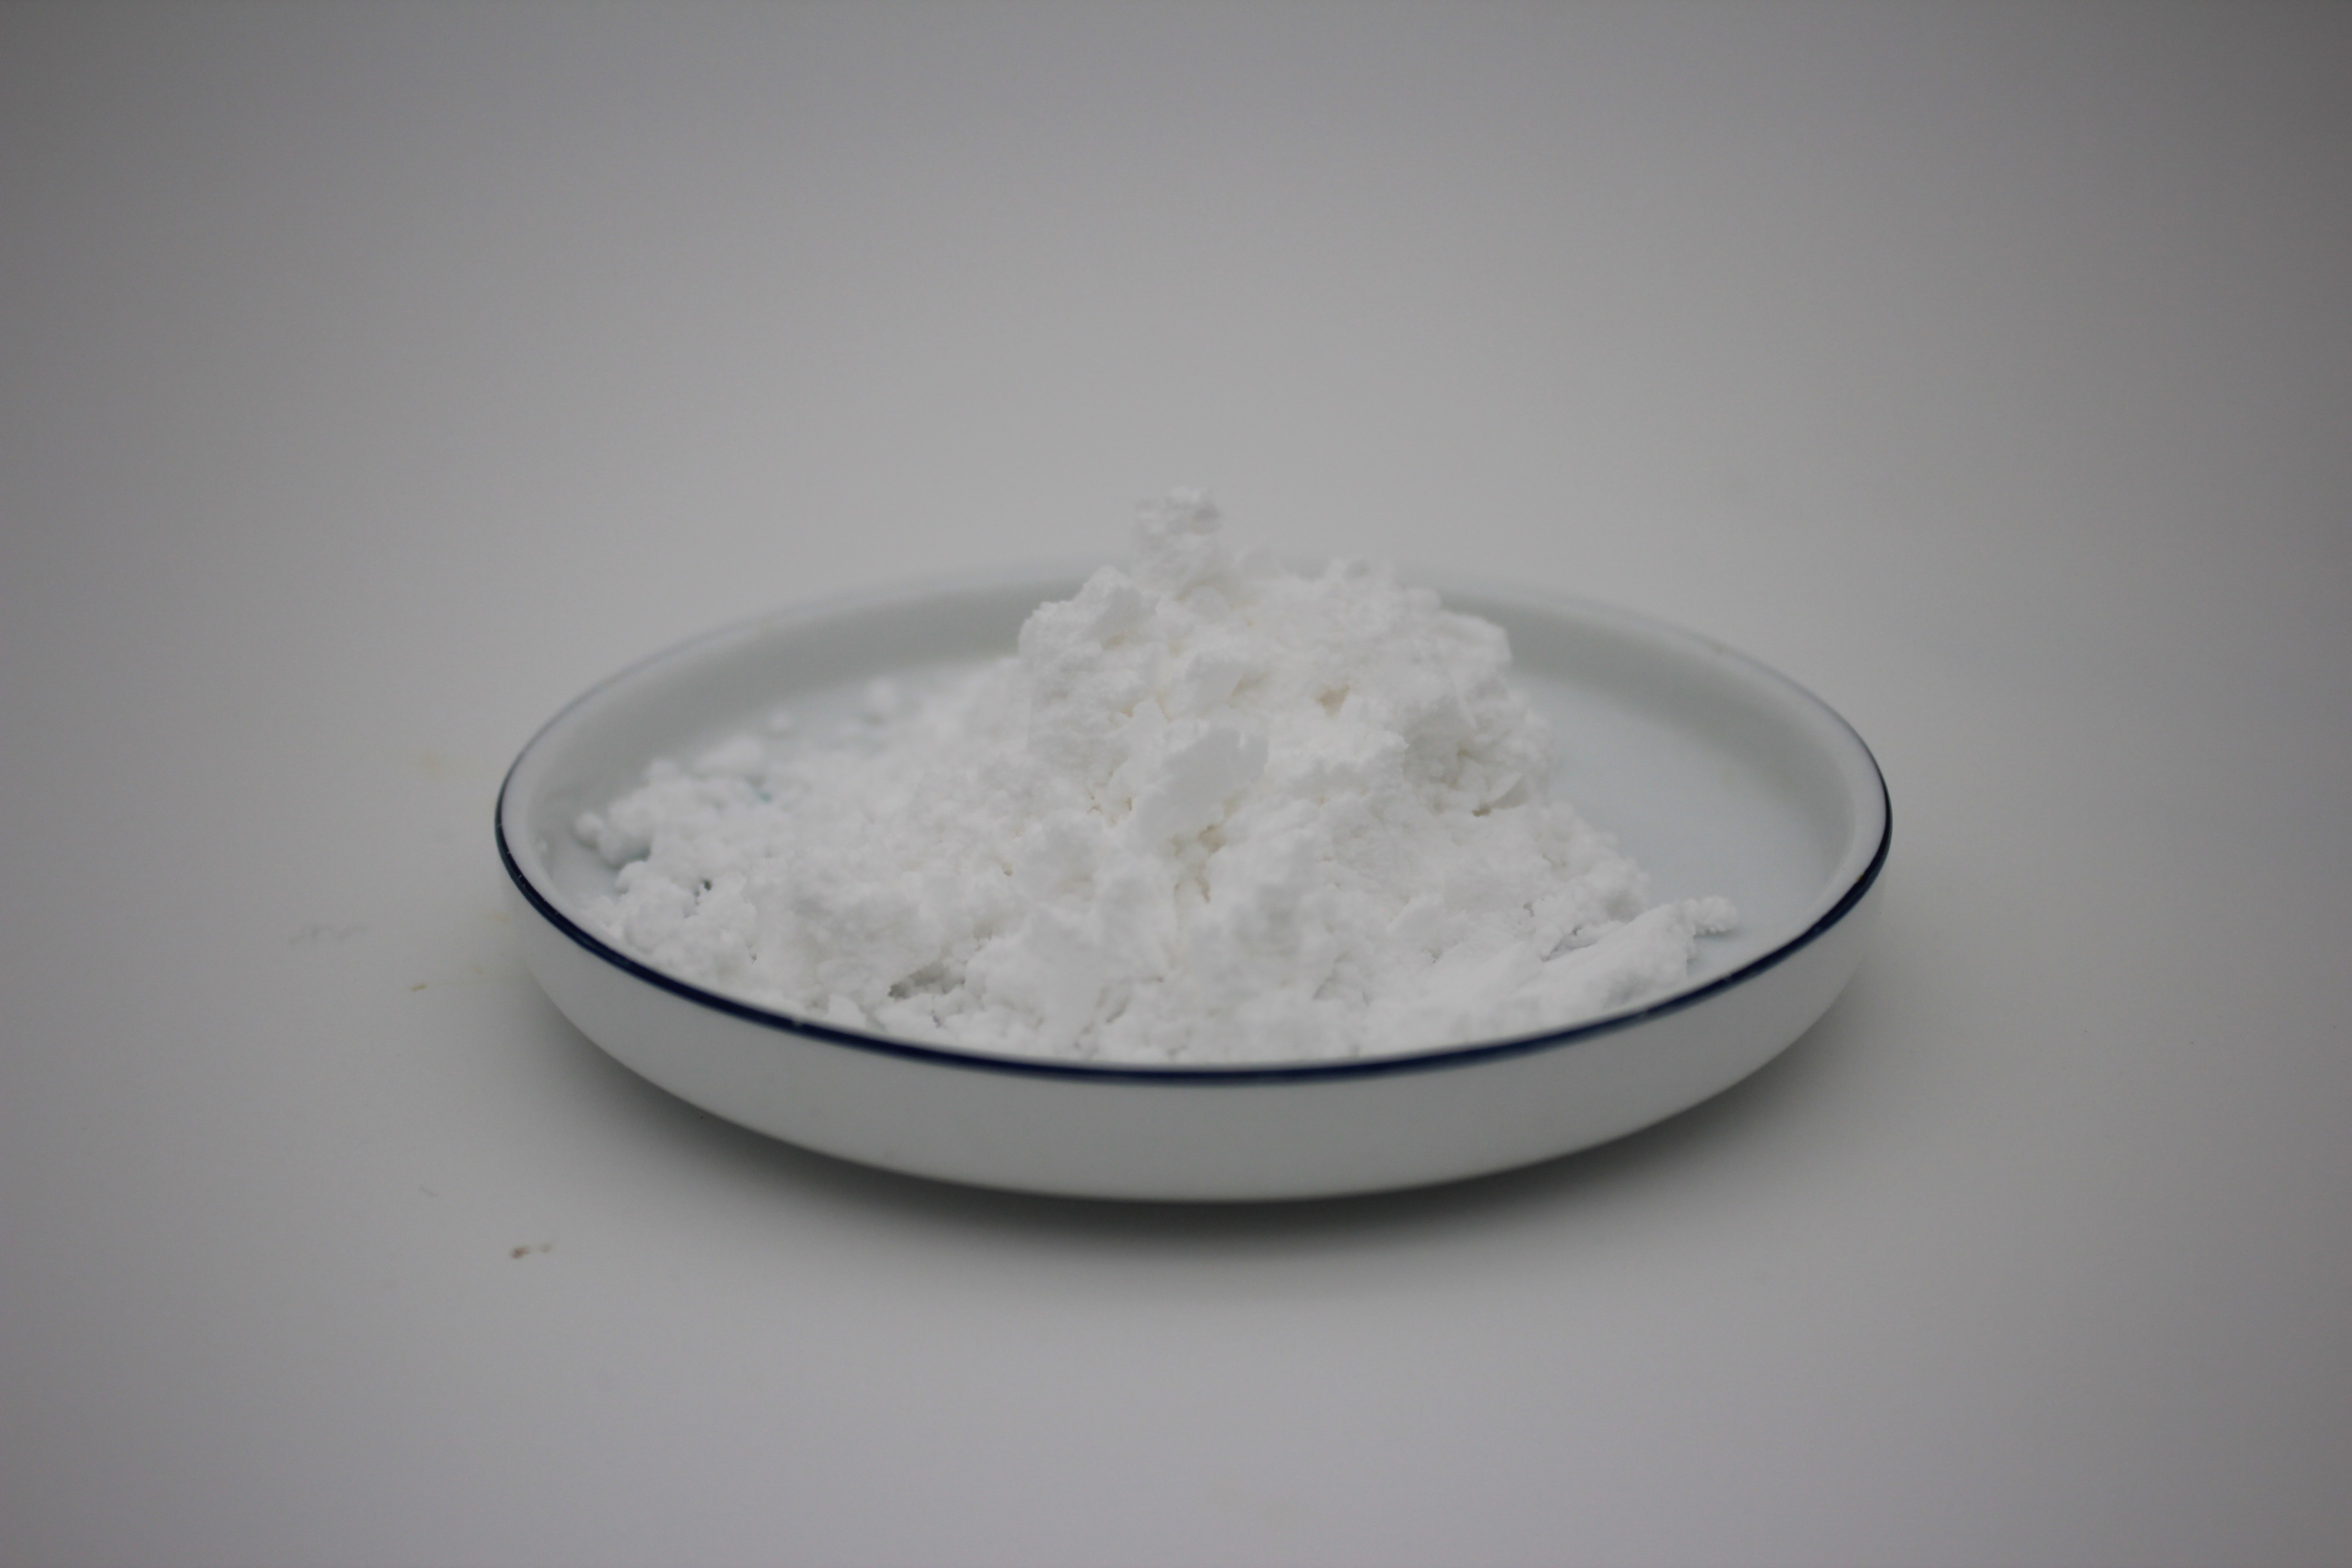 Tranexamic acid powder